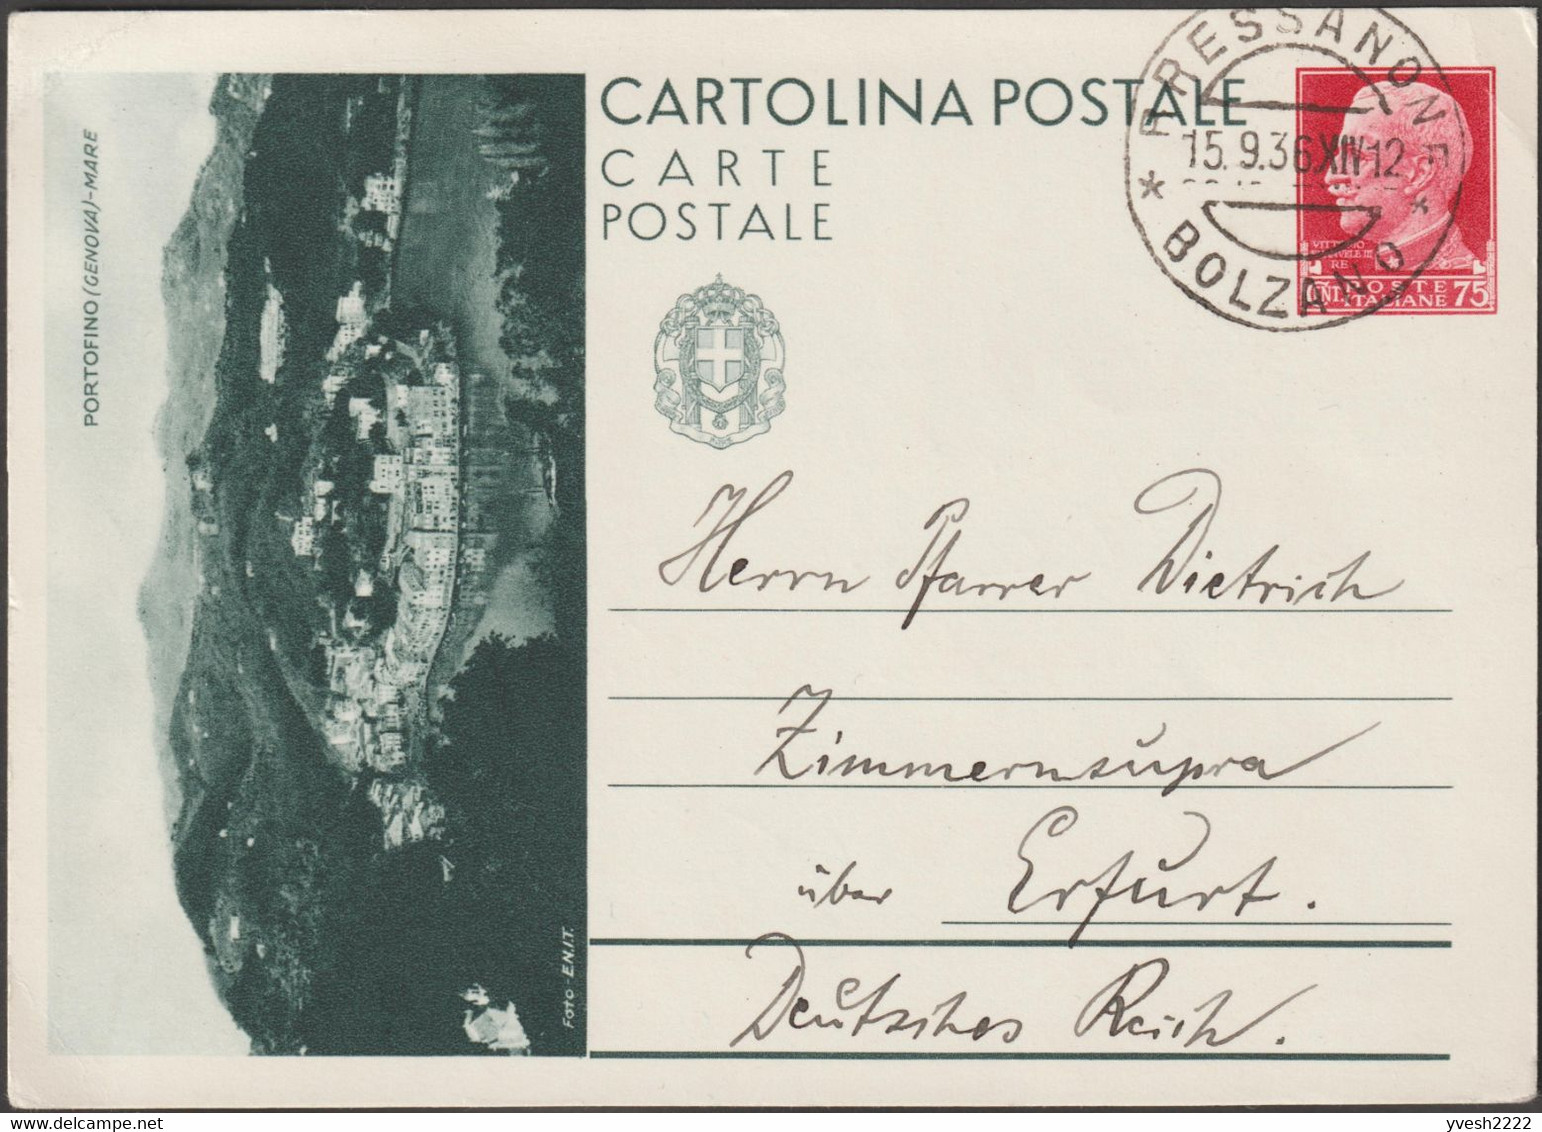 Italie 1936. Entier Postal Touristique Pour L'étranger. Portofino, Genova. Village Entre Mer Et Montagne. Bressanone - Montañas